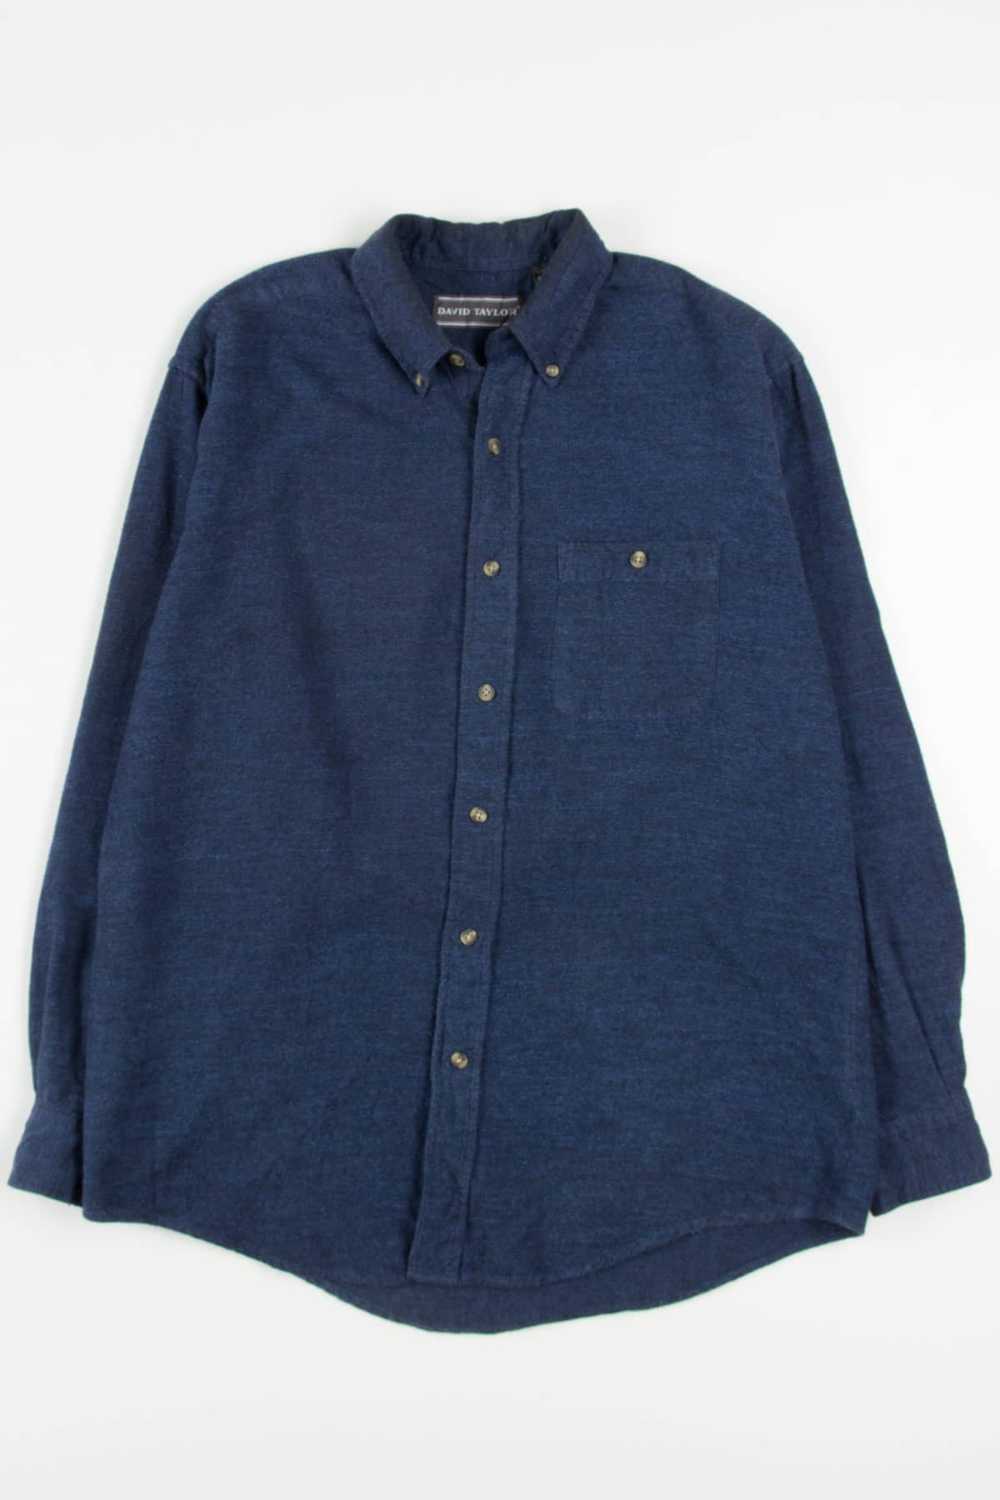 Vintage David Taylor Flannel Shirt 3695 - image 2